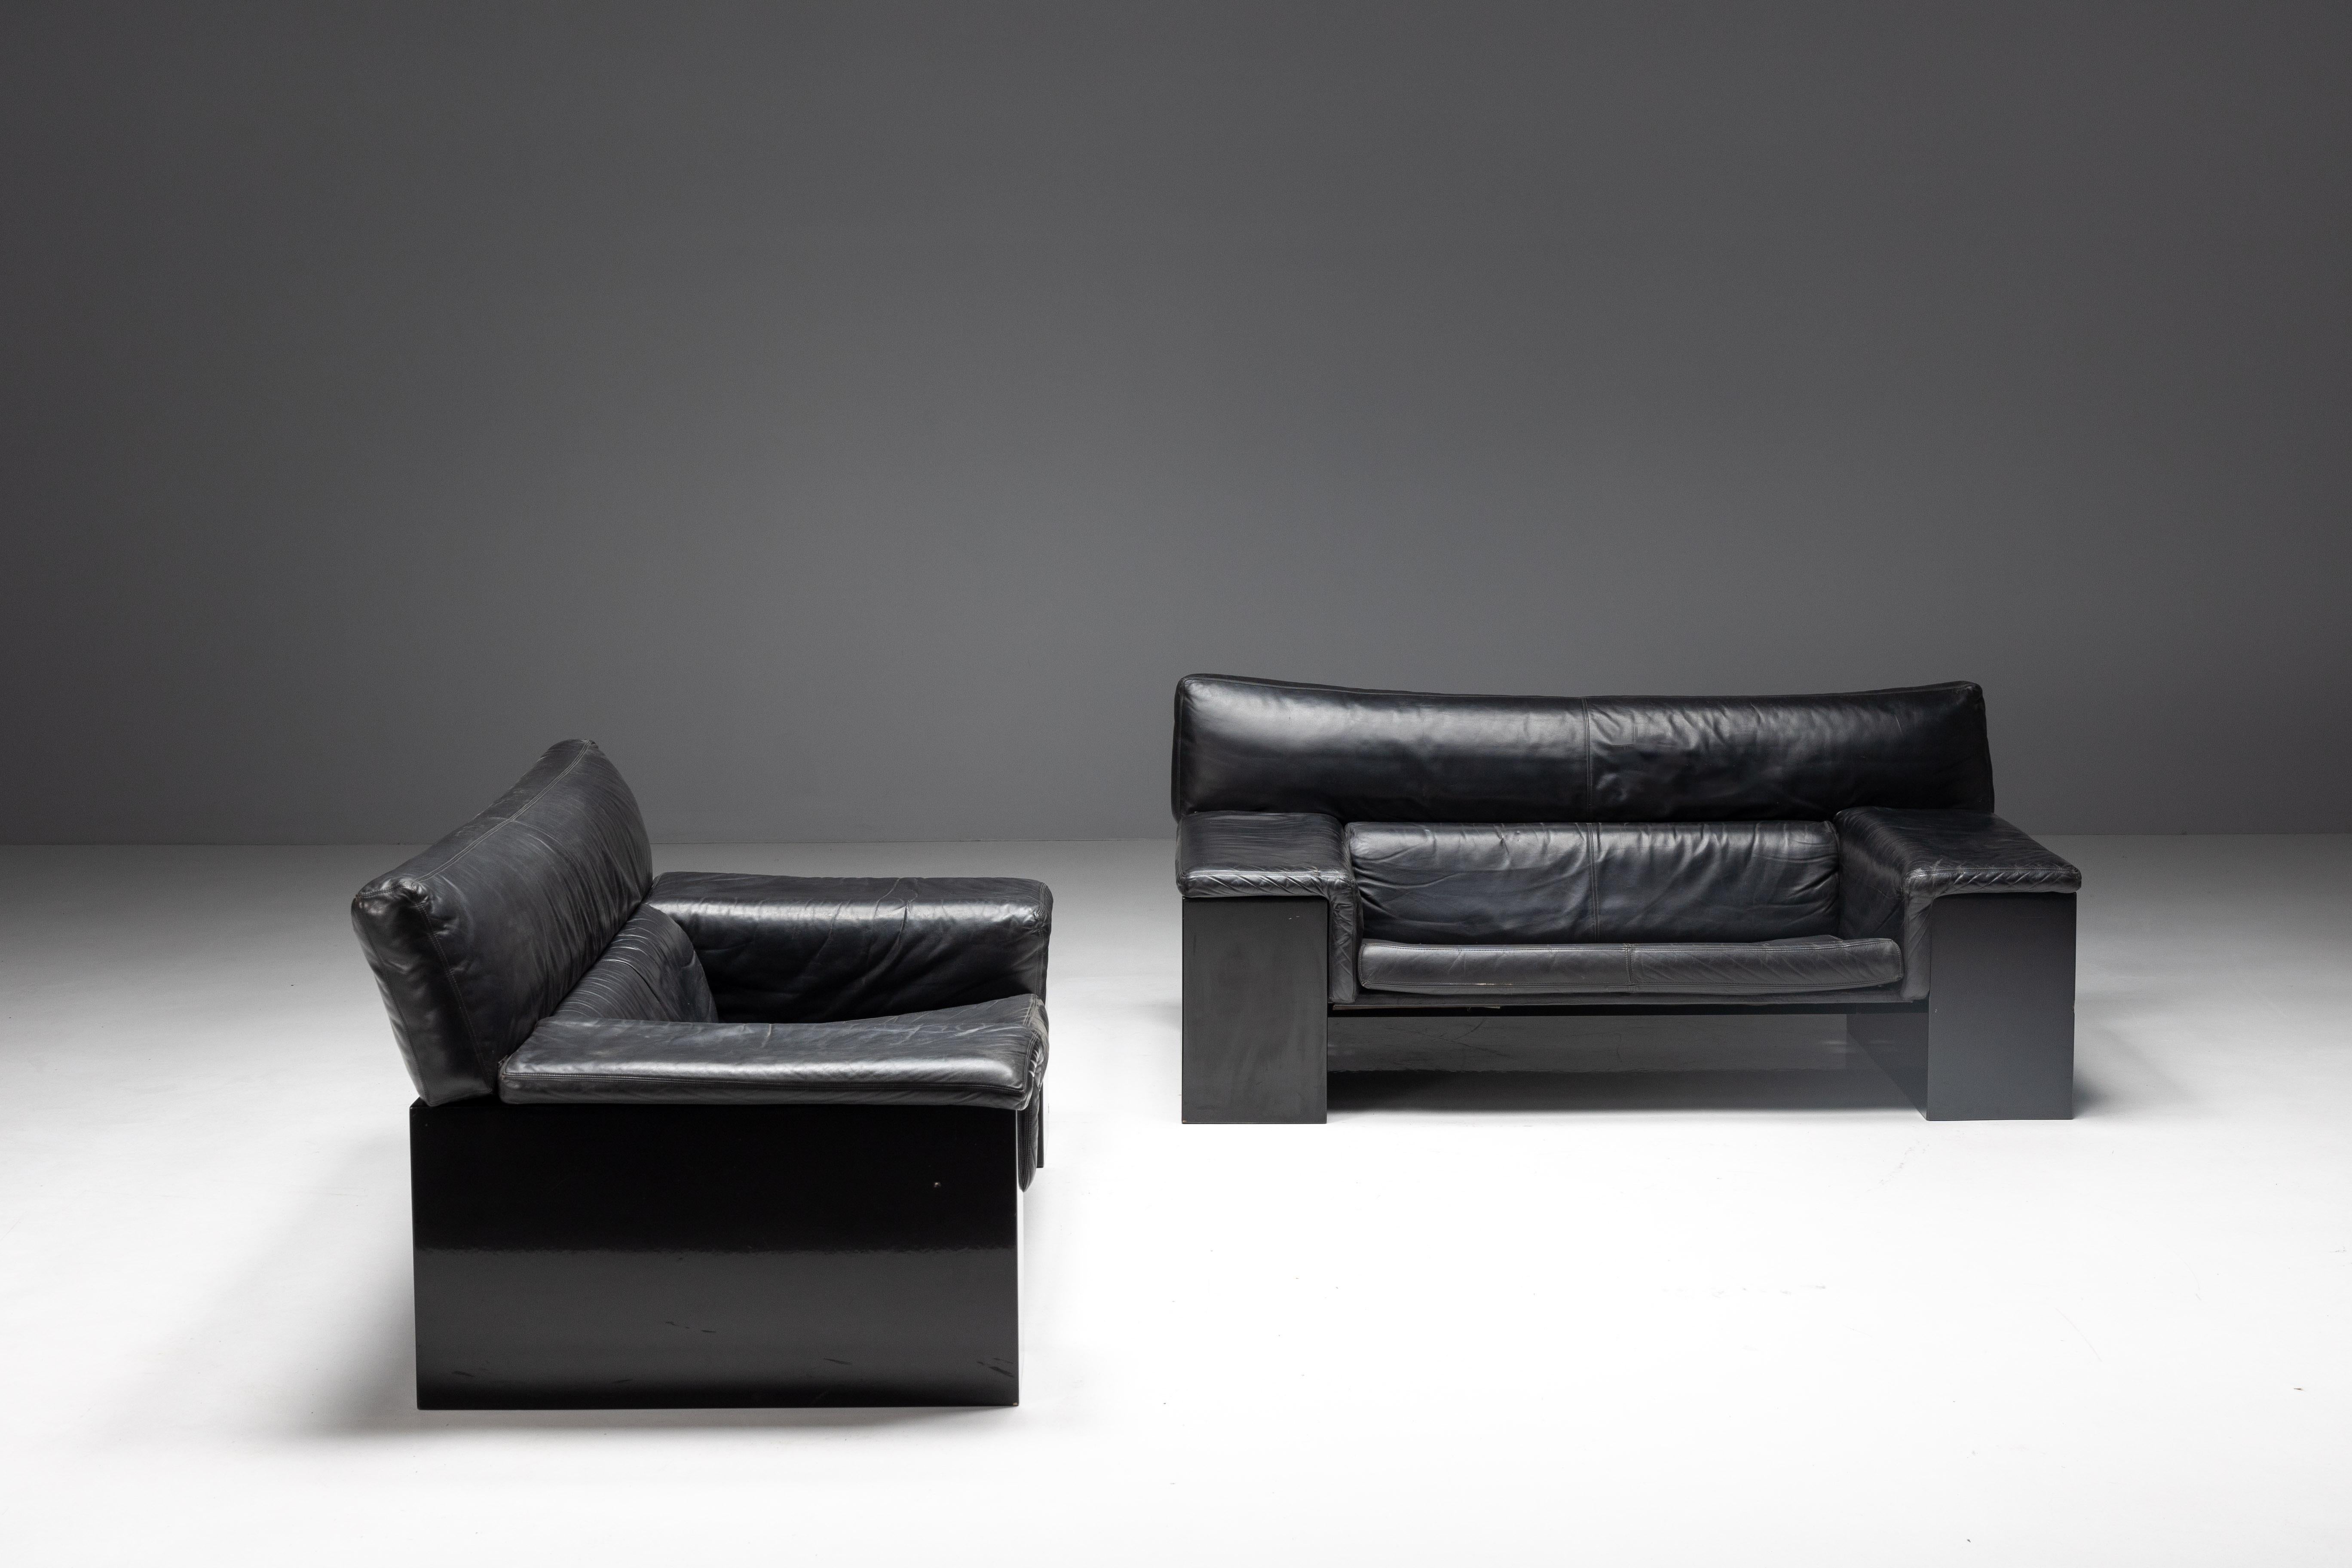 Zwei außergewöhnliche Sofas aus der preisgekrönten Brigadier-Serie des bekannten italienischen Architekten und Designers Cini Boeri (1924-2020). Die in den 1980er Jahren für Knoll gefertigten Sofas verfügen über einen eleganten, schwarz